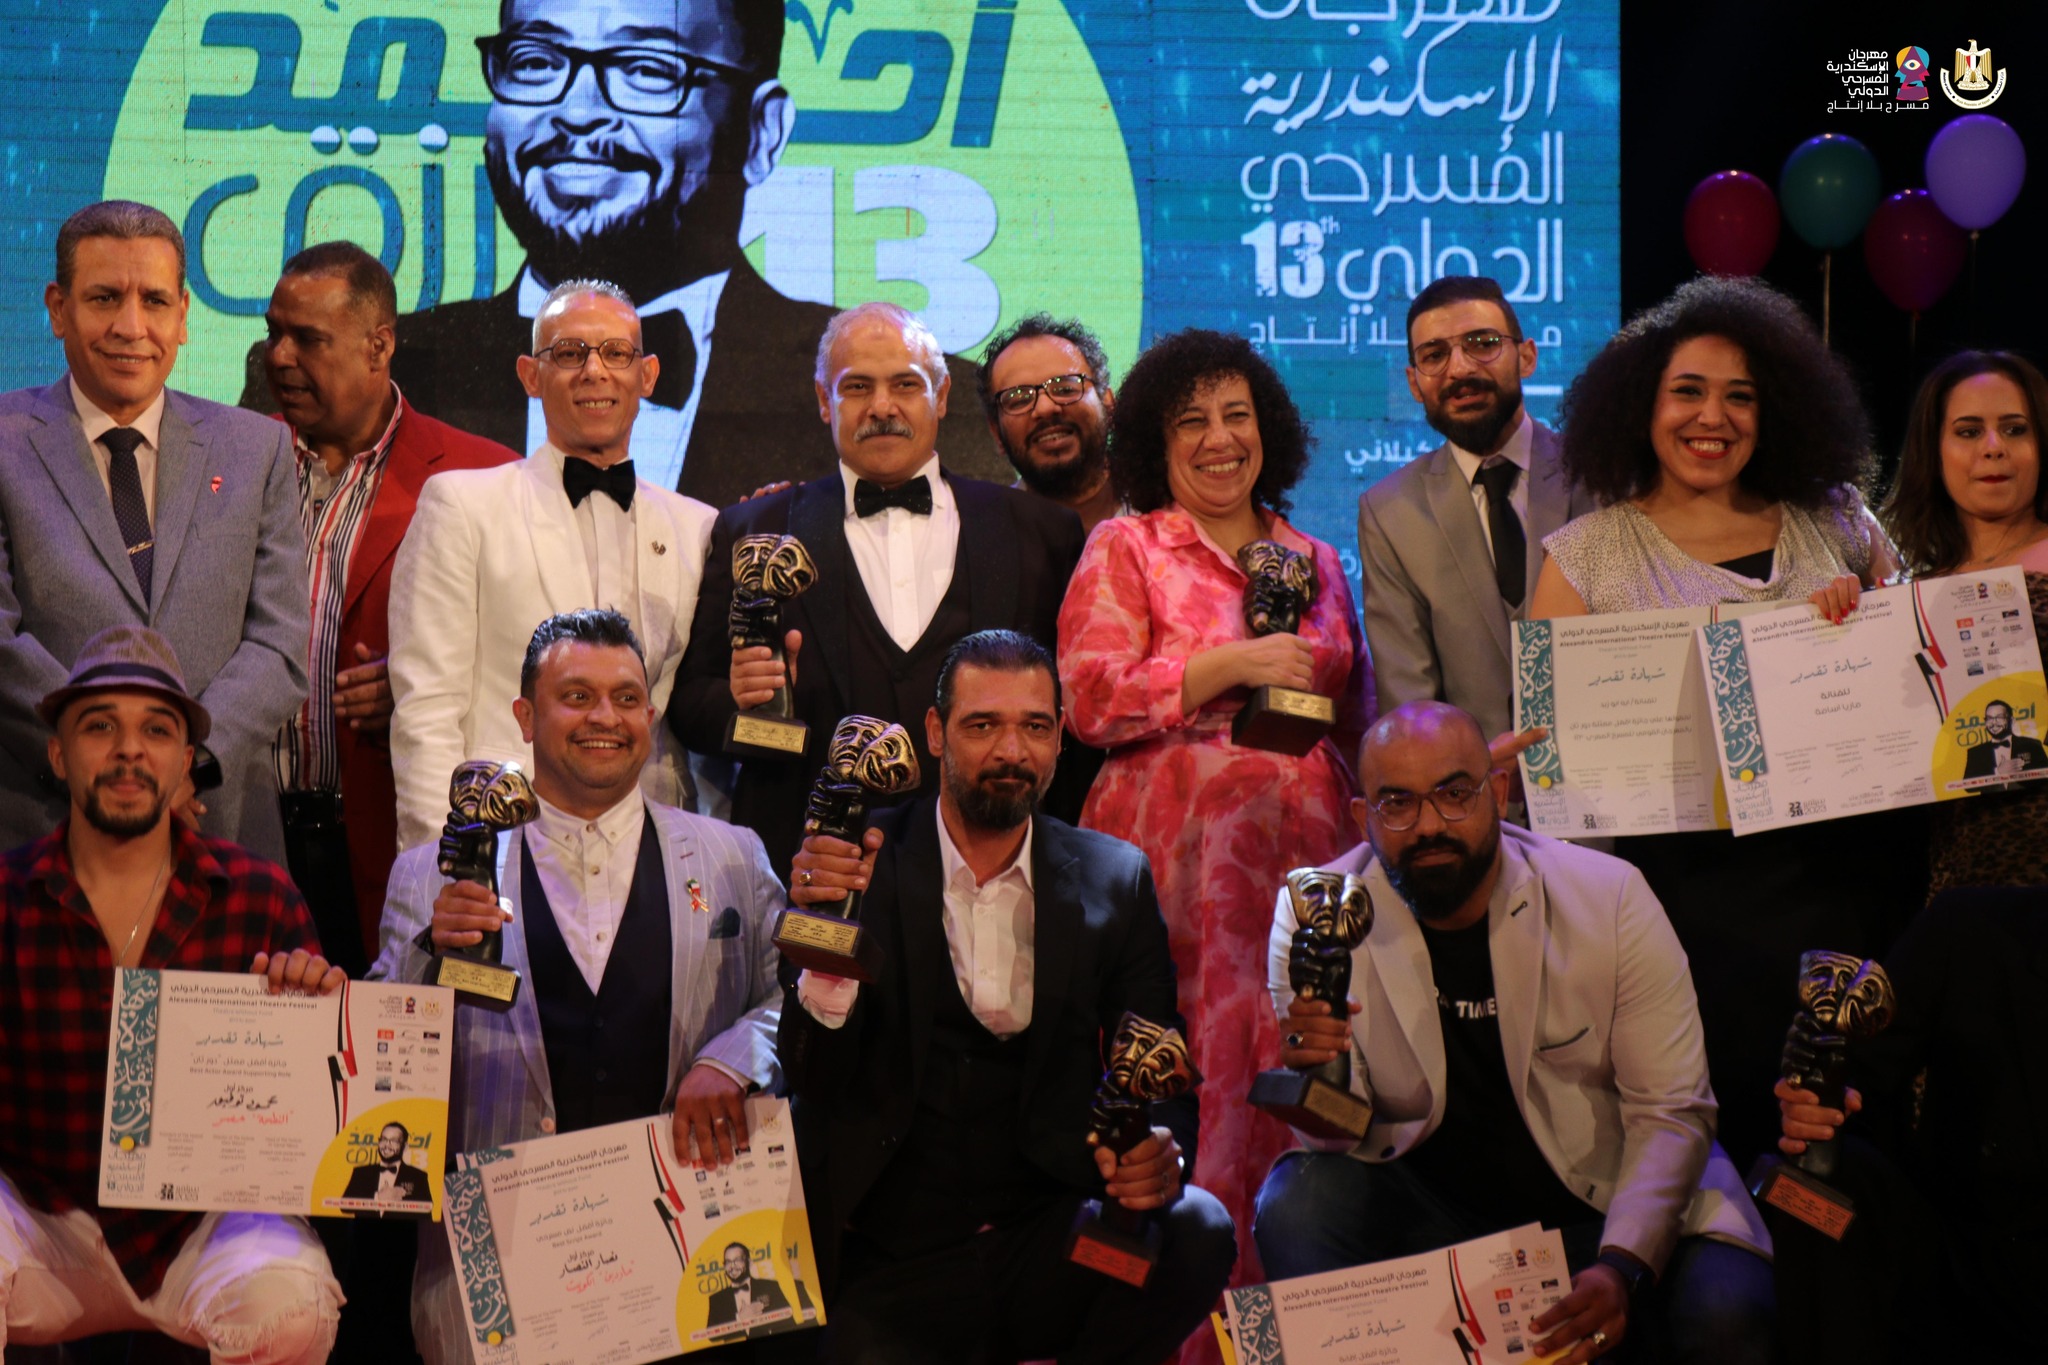 إبراهيم الفرن رئيس المهرجان يتوسط المكرمين والفائزين فى الدورة الـ 13